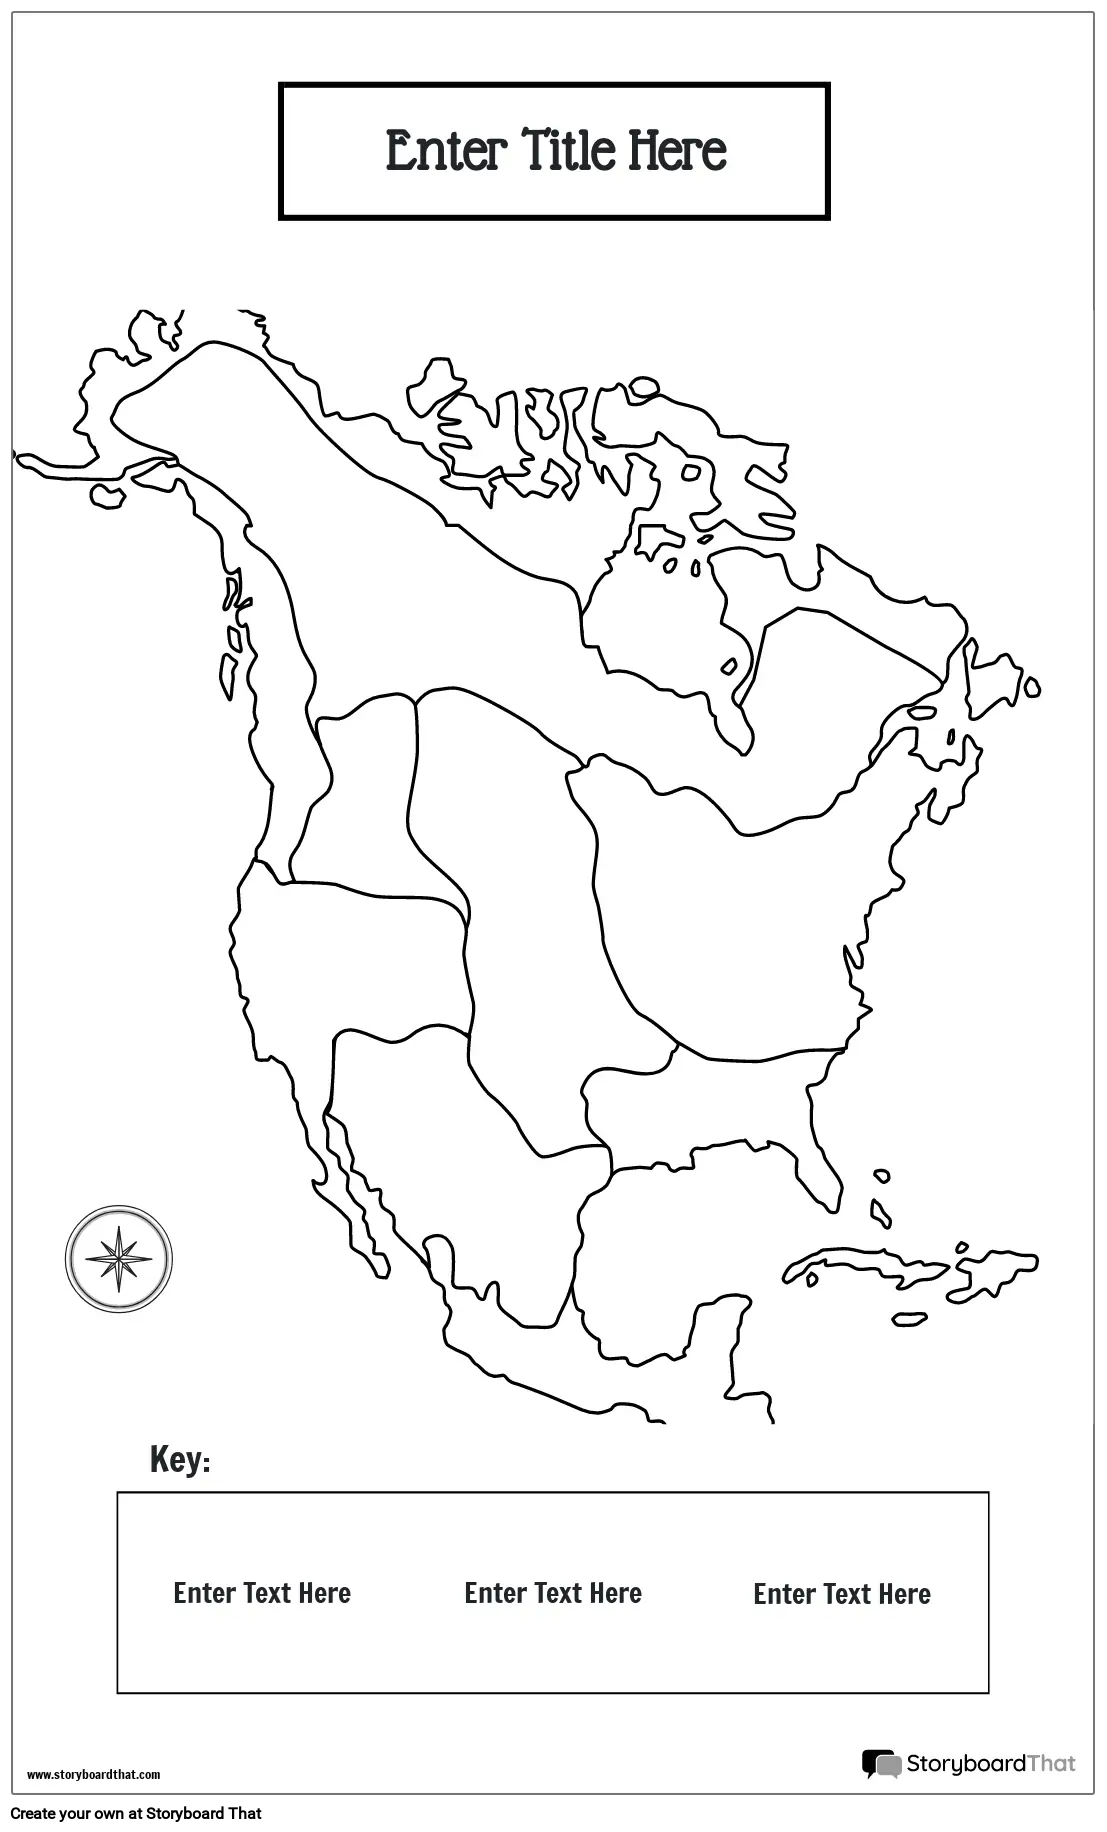 Cartaz do Mapa 16 BW Retrato de Regiões Culturais Nativas Americanas